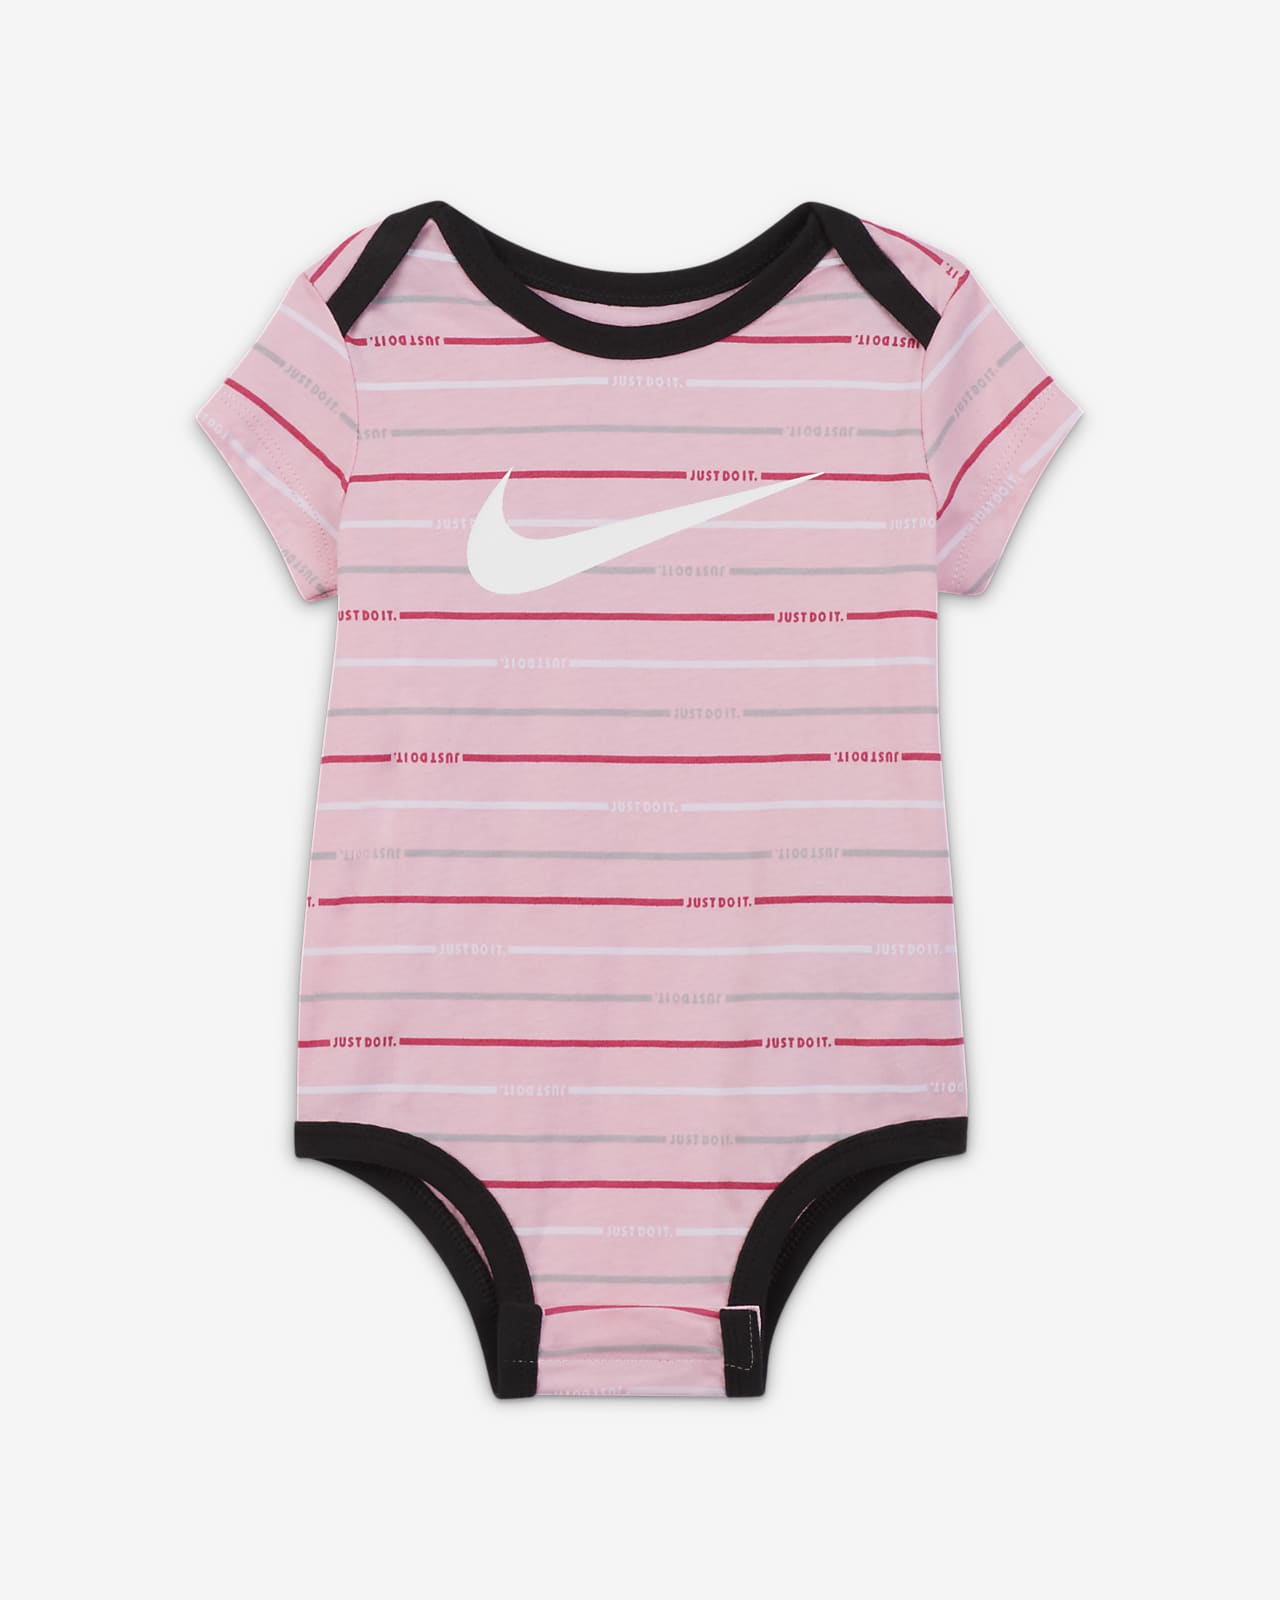 Nike 3-Piece Baby Set.